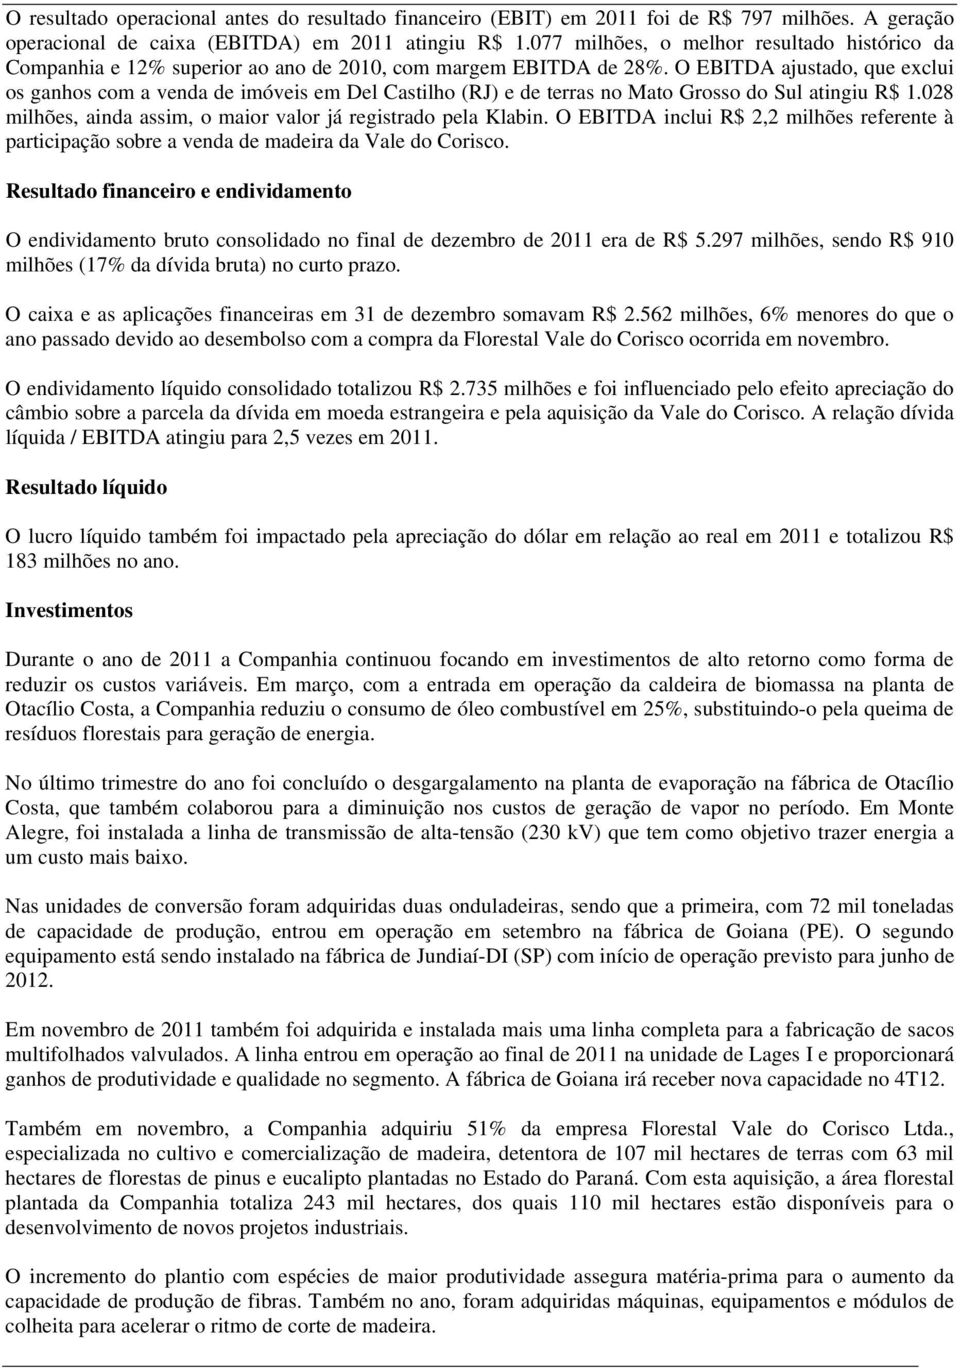 O EBITDA ajustado, que exclui os ganhos com a venda de imóveis em Del Castilho (RJ) e de terras no Mato Grosso do Sul atingiu R$ 1.028 milhões, ainda assim, o maior valor já registrado pela Klabin.